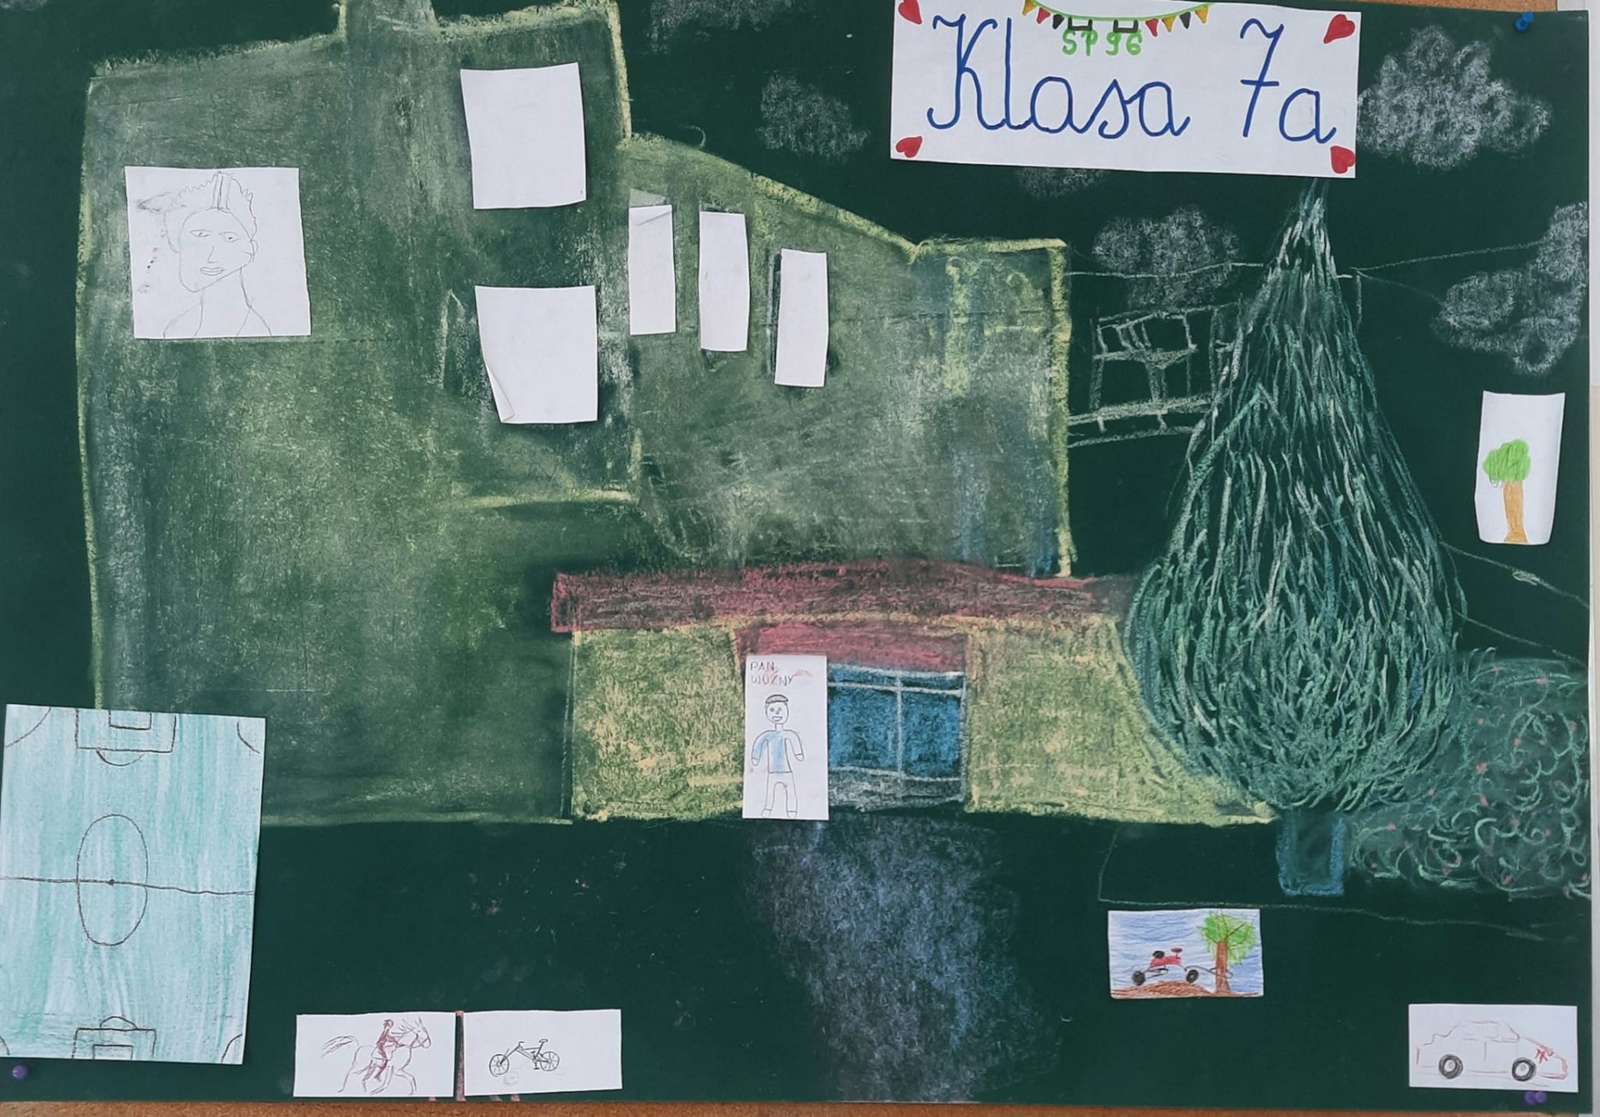 Az iskola makettje a tavalyi 7a osztályból puzzle online fotóról